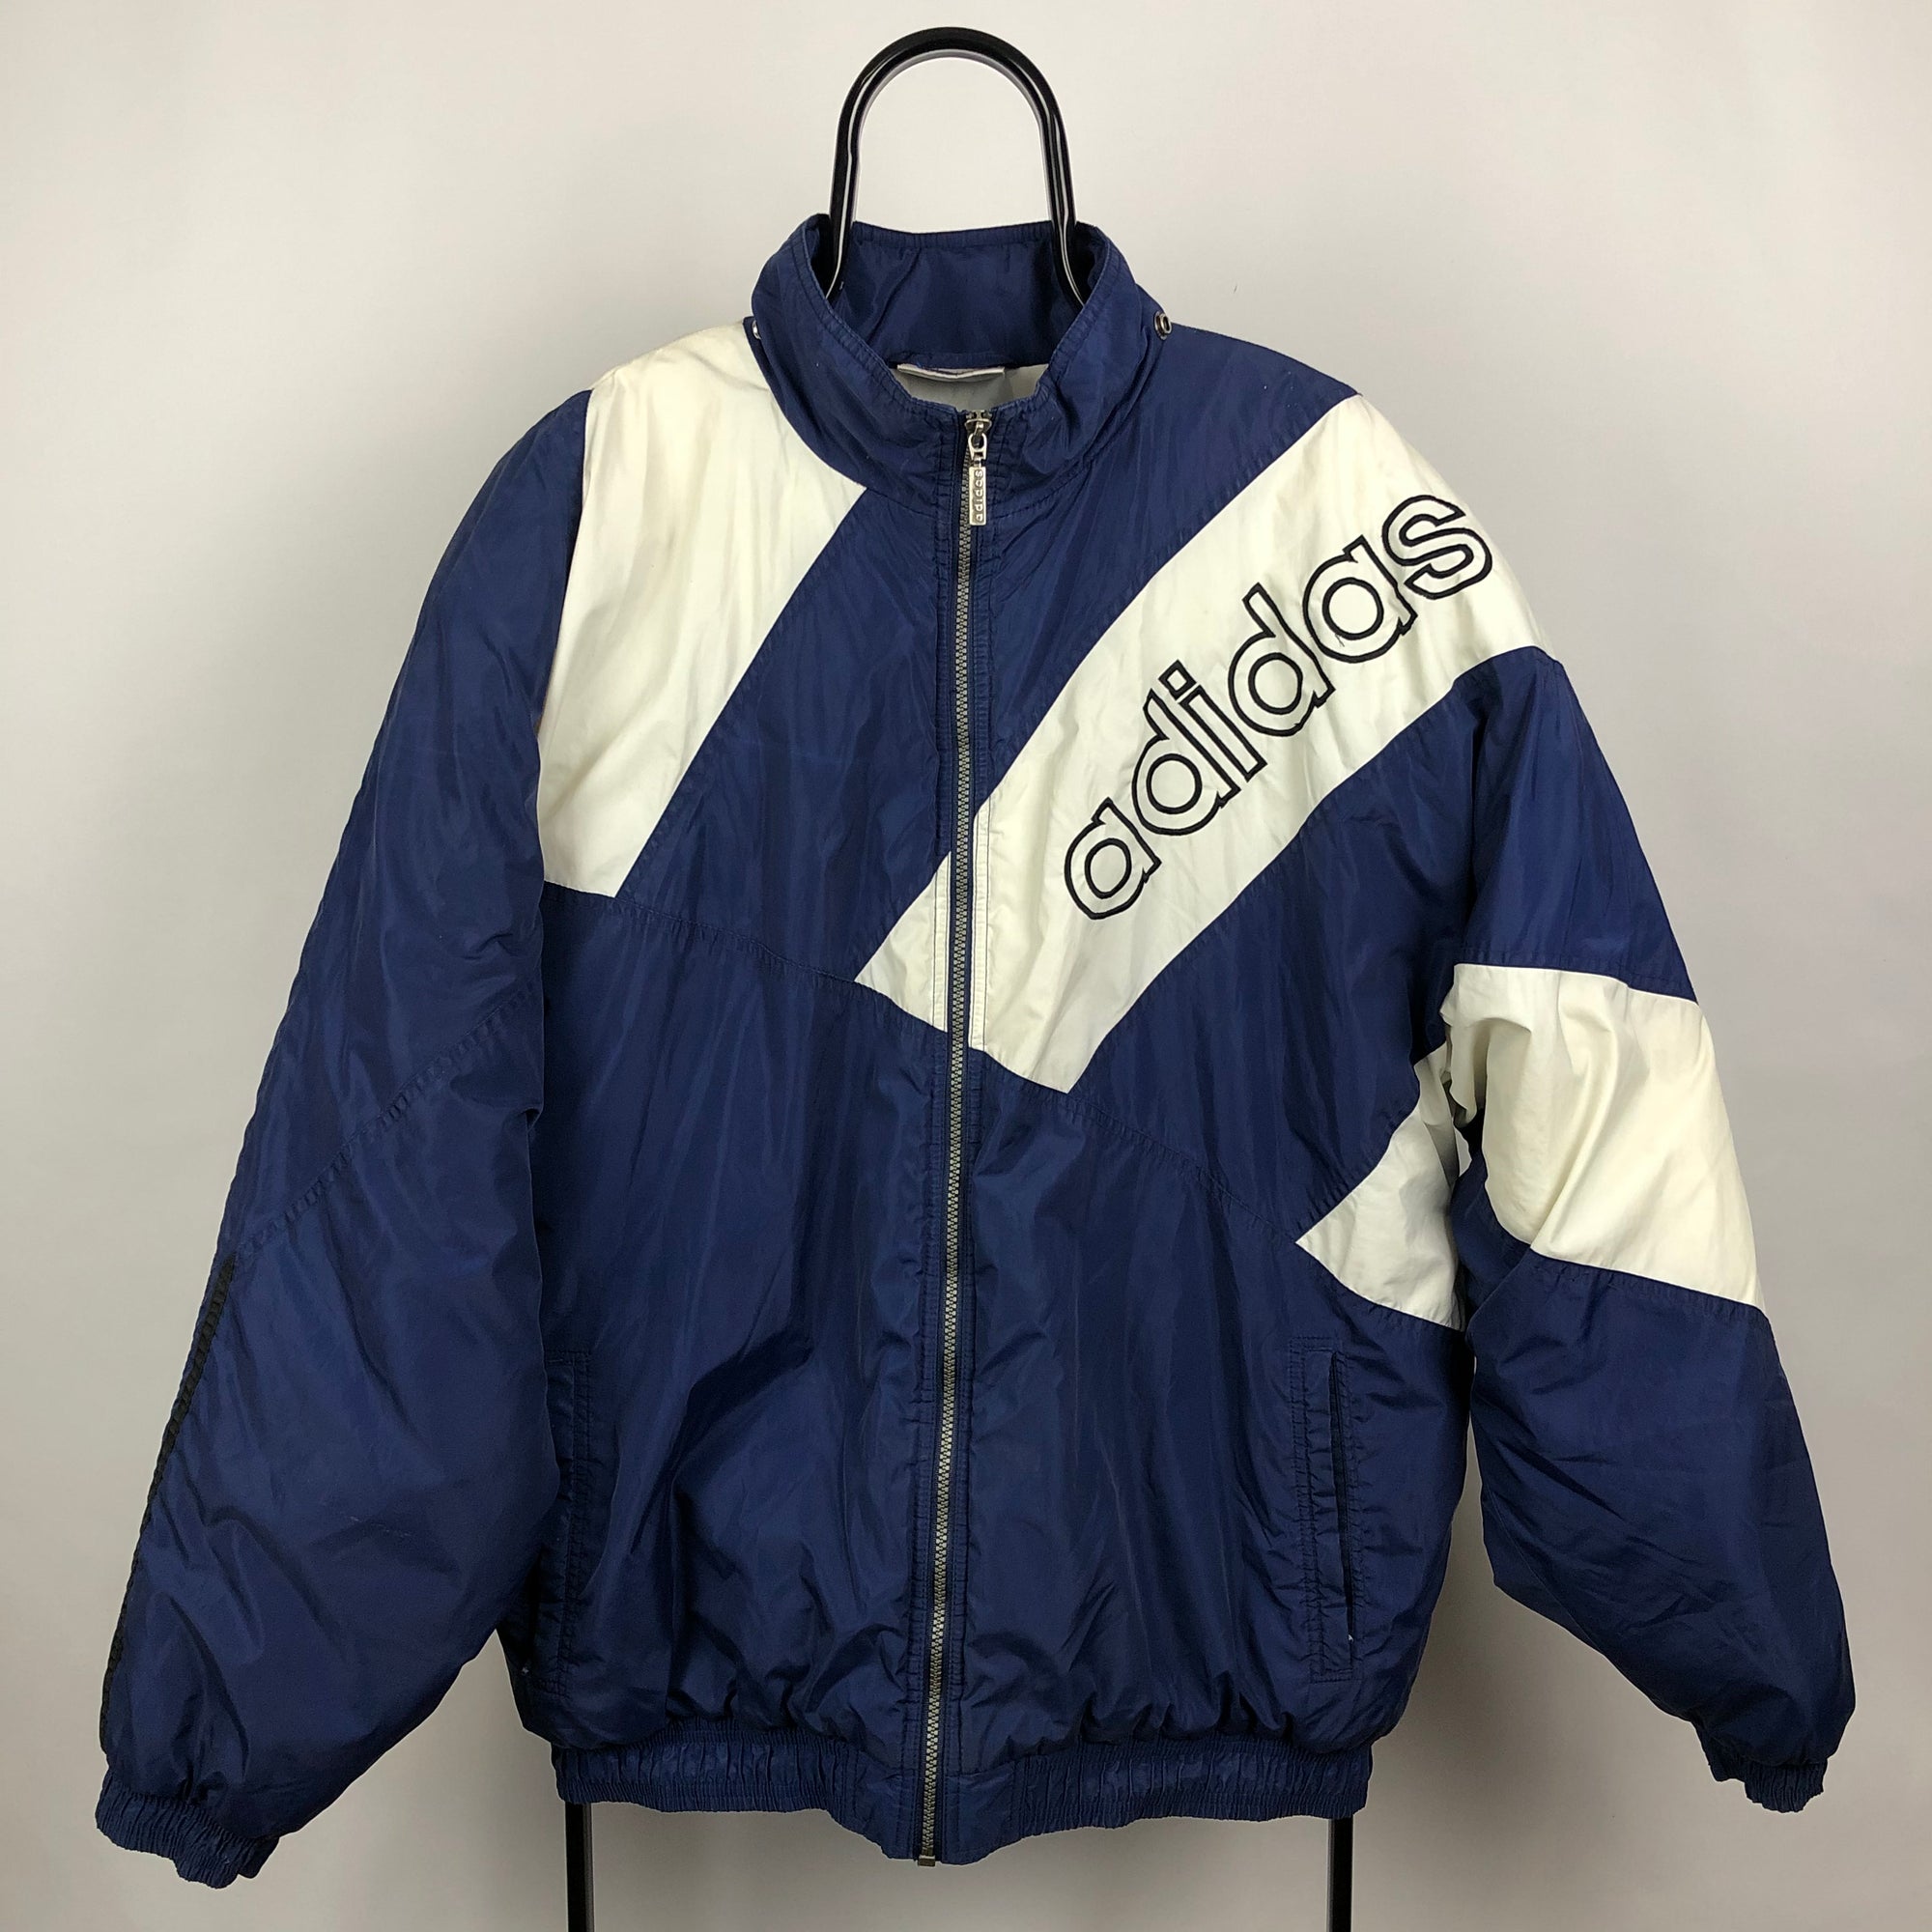 Vintage Adidas Puffer Jacket in Blue/White - Men's XL/Women's XXL